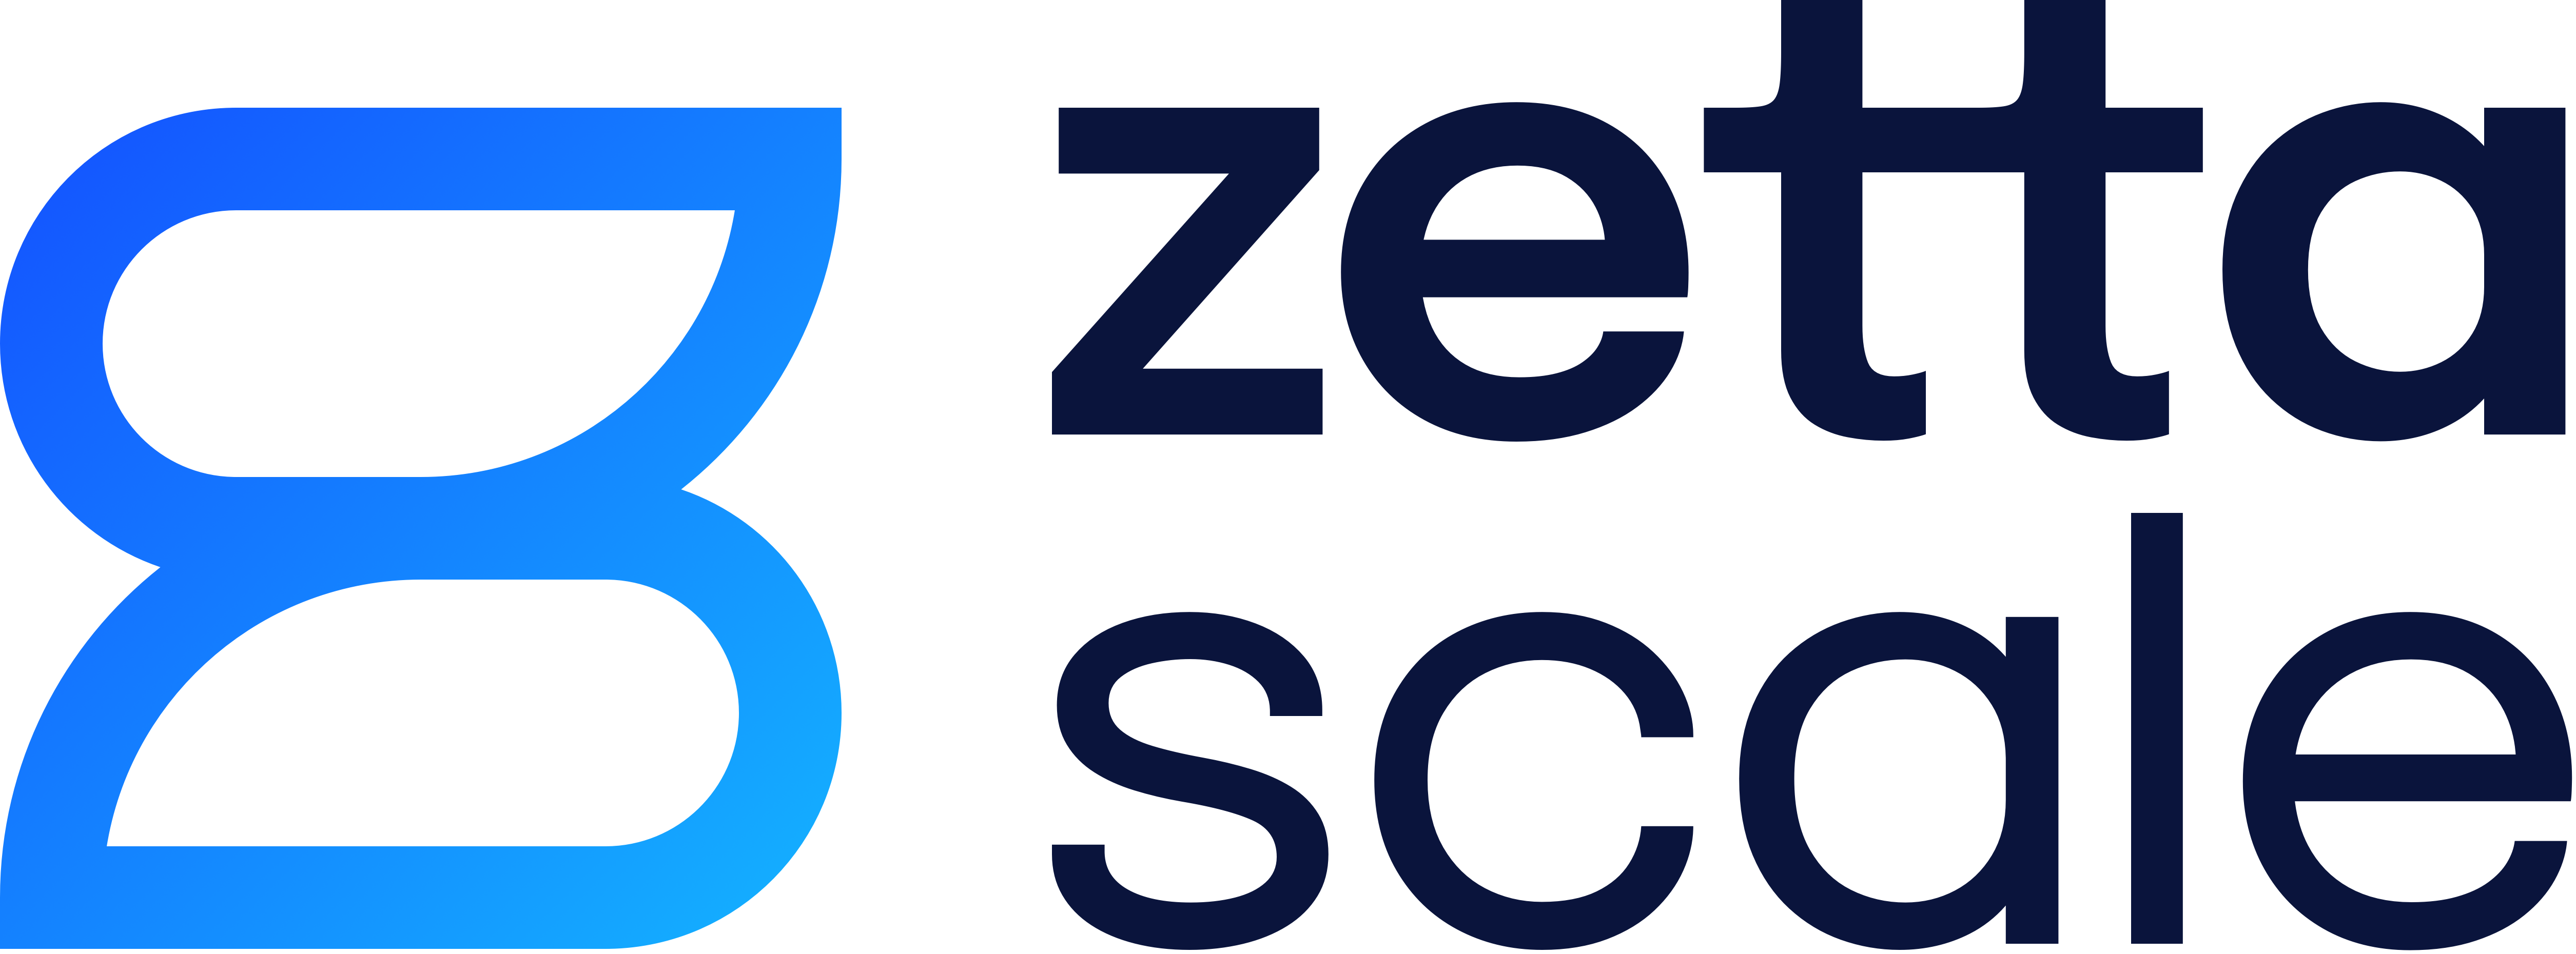 zettascale logo